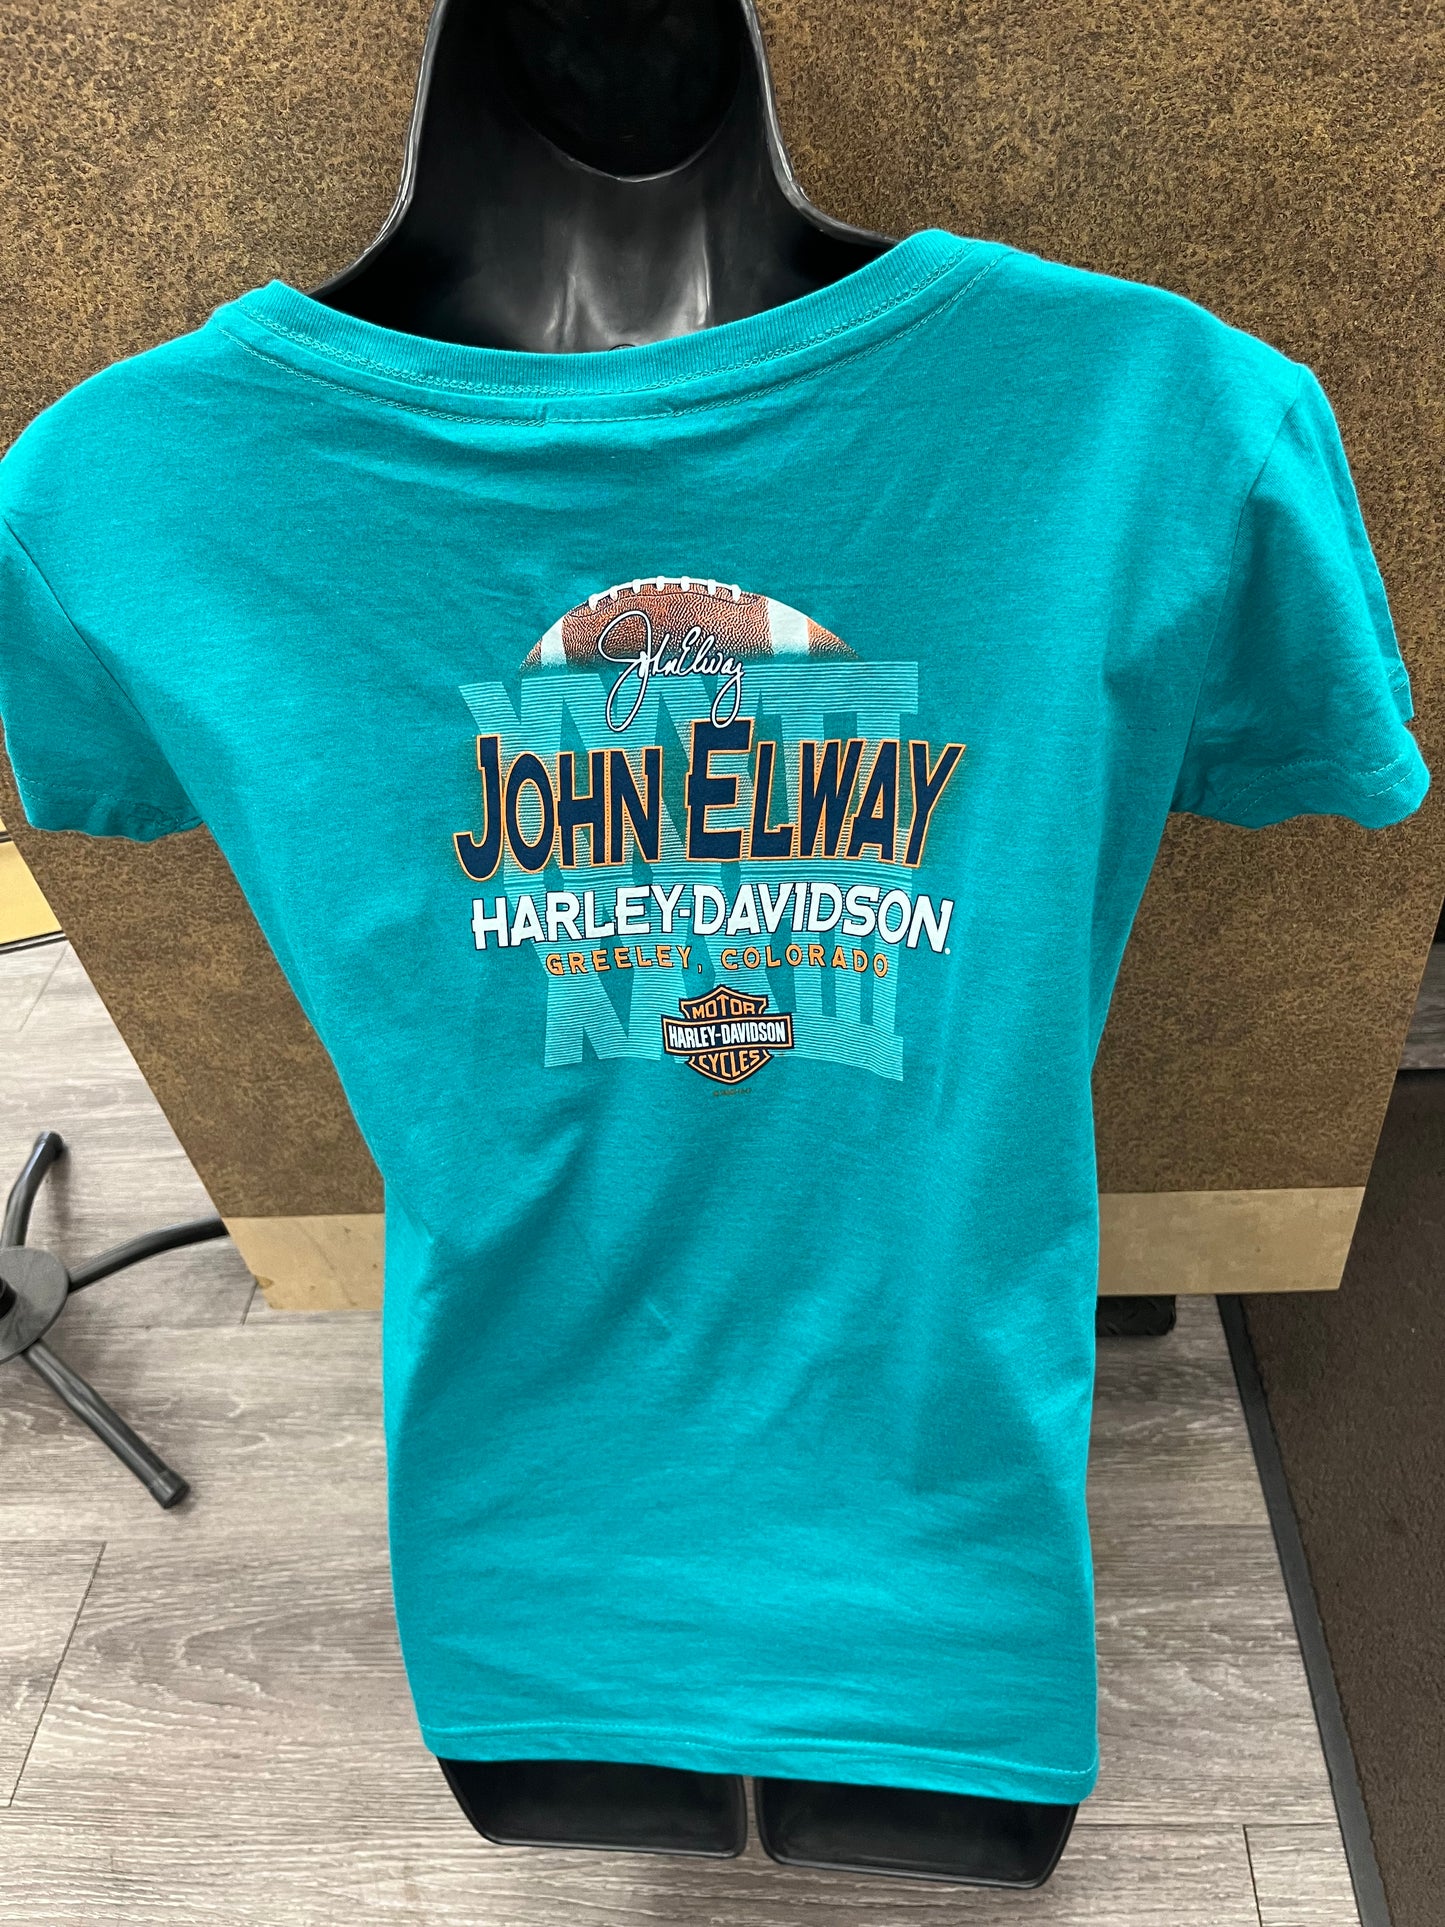 John Elway Harley-Davidson Women's Teal T-shirt 402911840